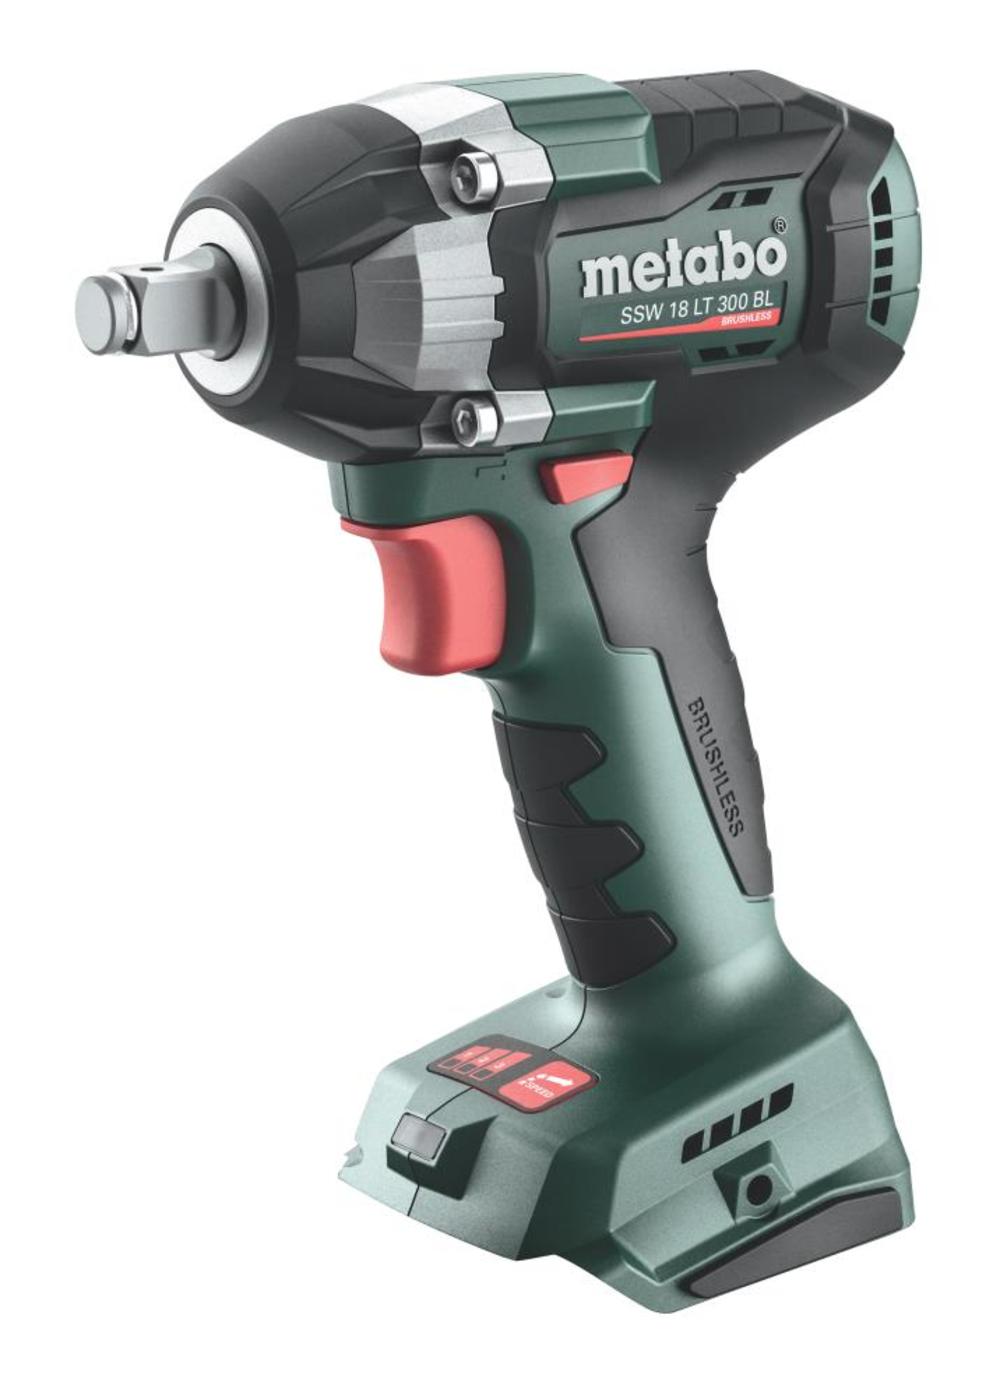 Metabo SSW 18 LT 300 BL 18V 1/2 Square Brushless Impact Wrench